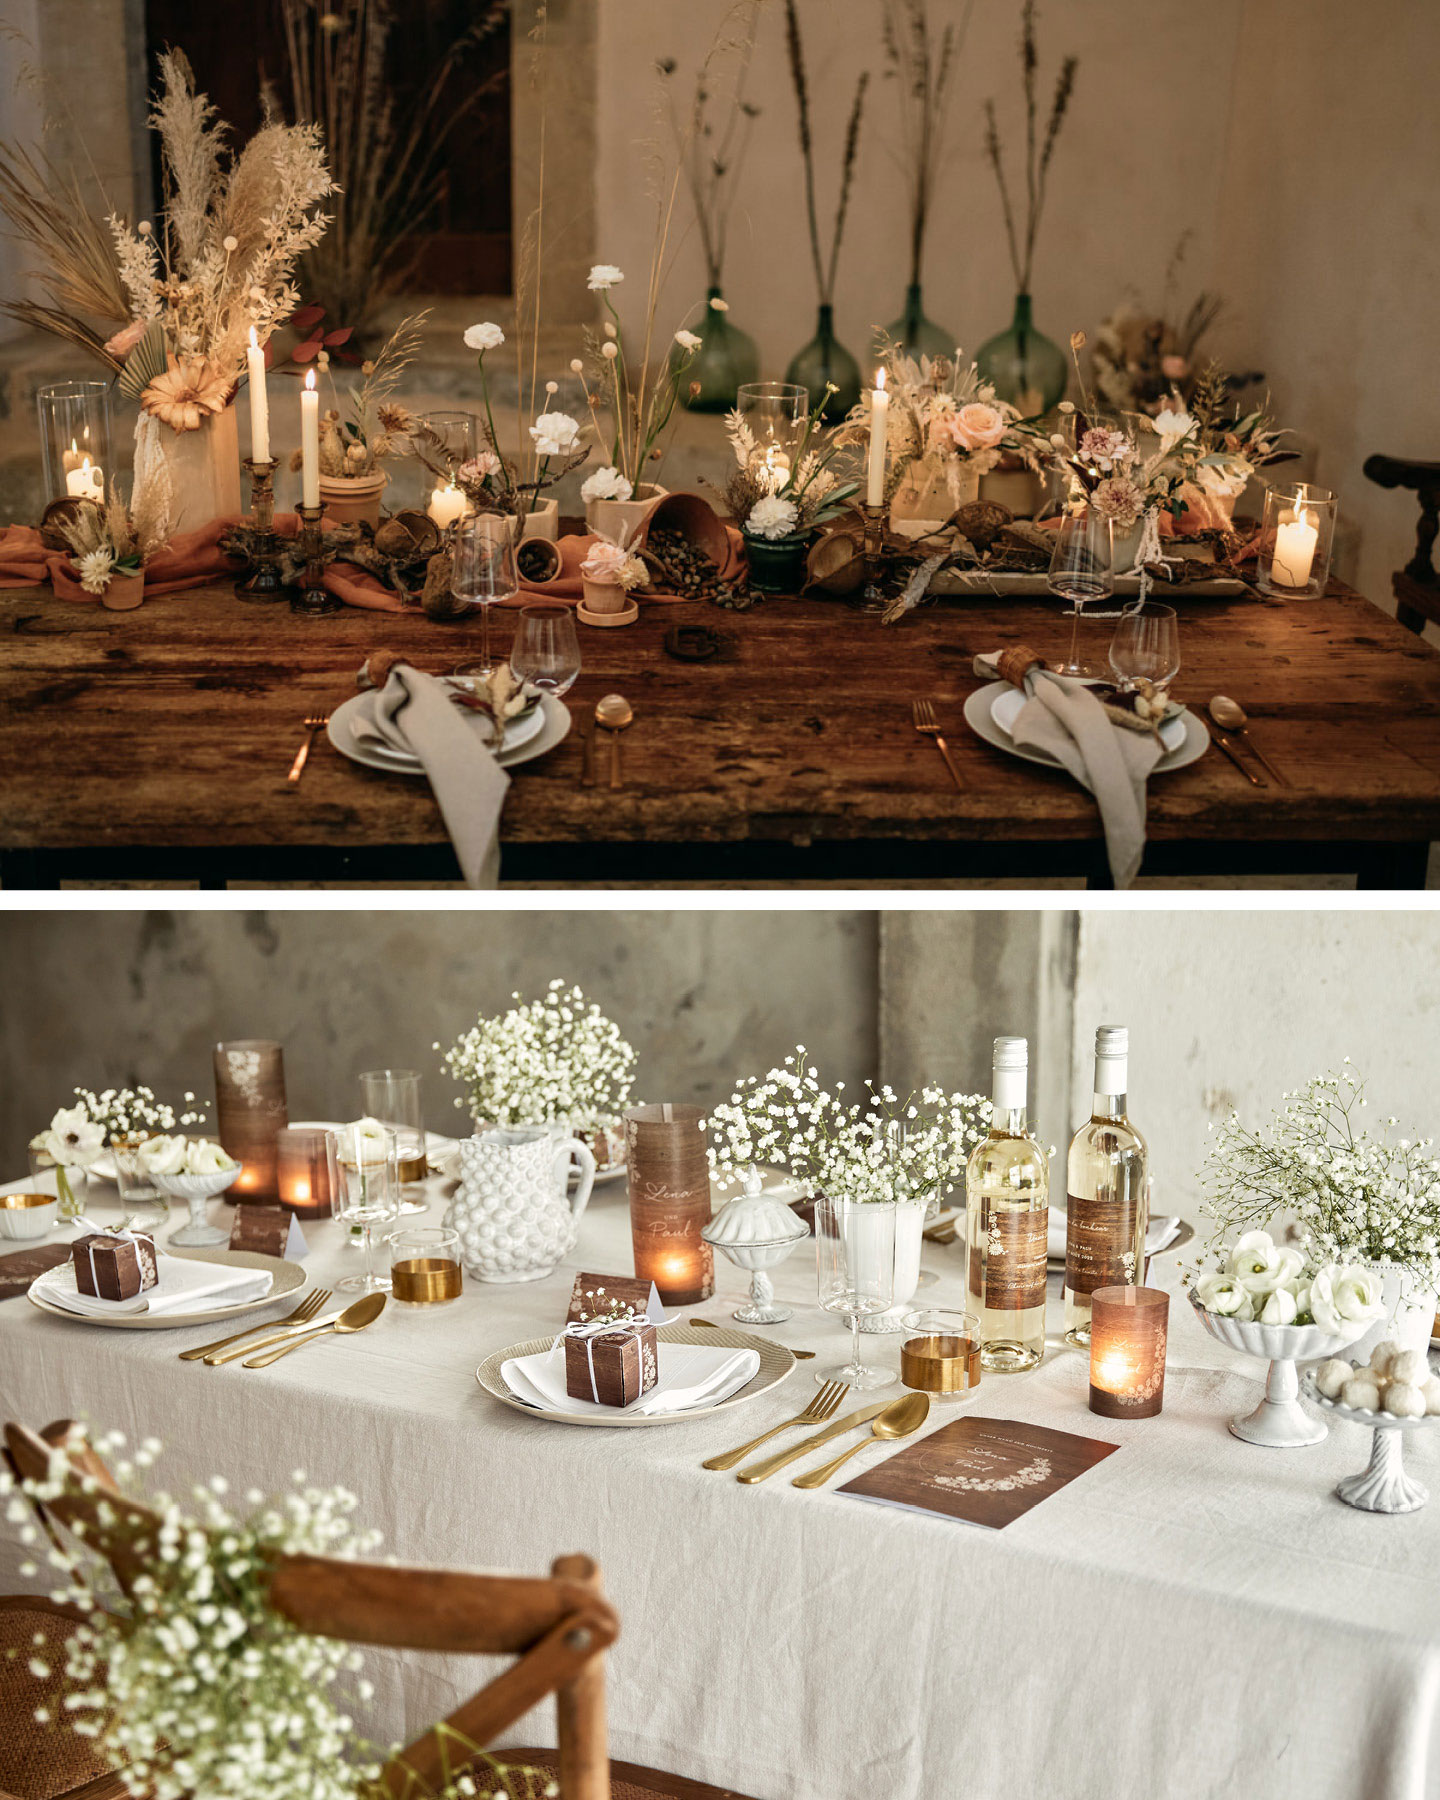 Hochzeitstafel aus Holz ist mit trockenen Blumen und Leinen Servietten dekoriert im rustikalen Vintage Stil.